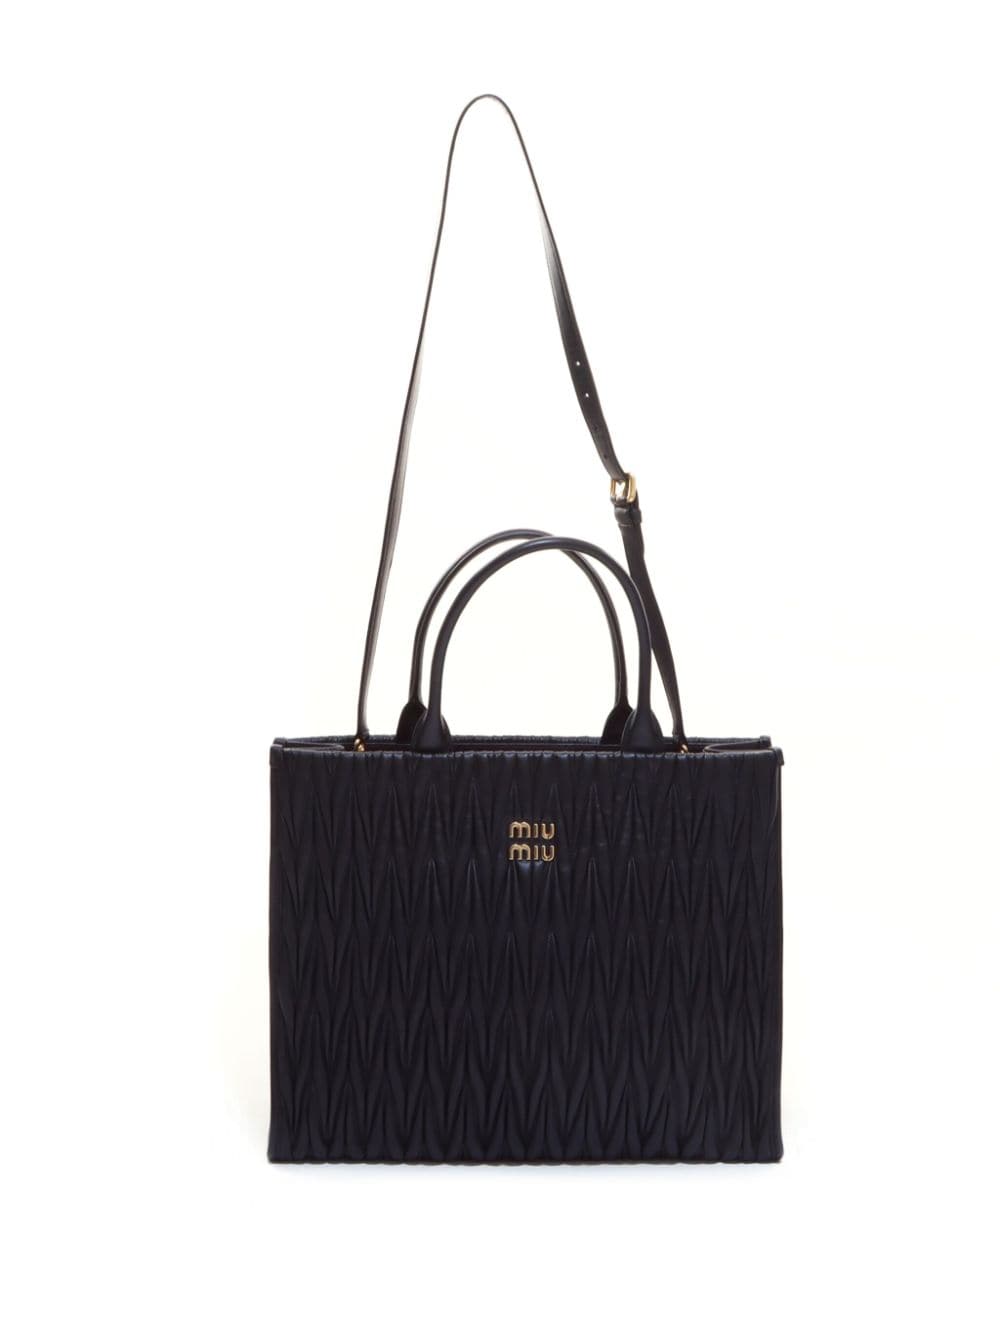 Pre-owned Miu Miu Matelasse Two-way Handbag In Black